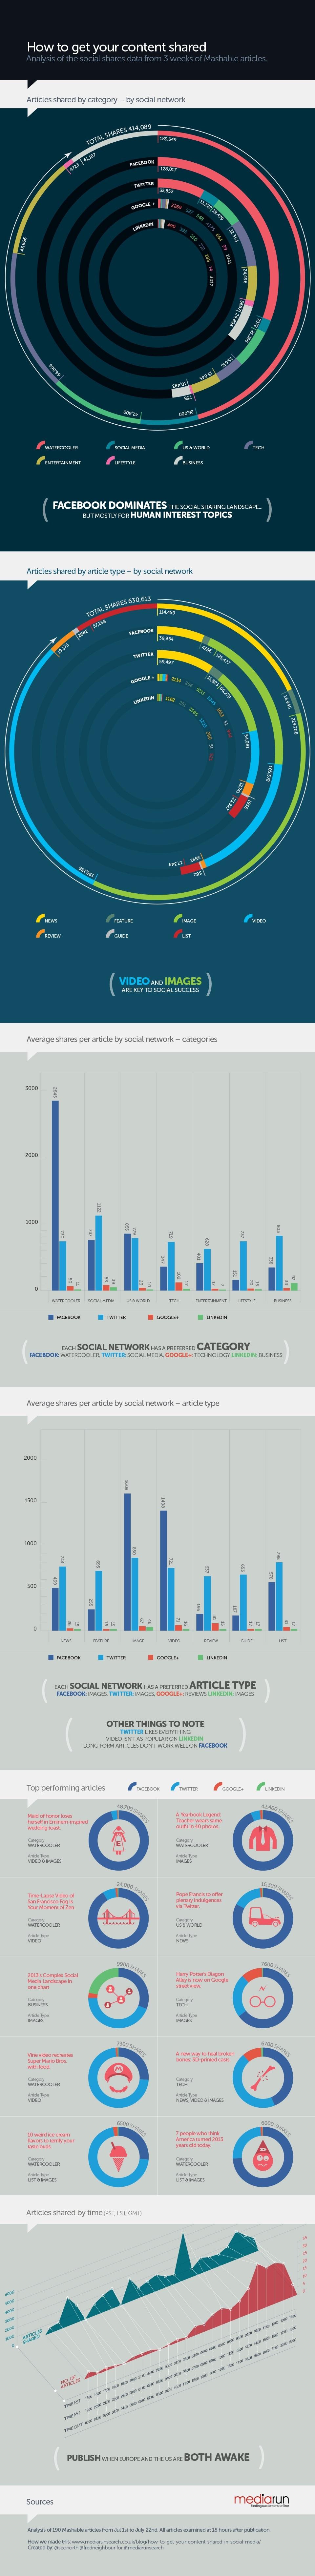 ¿Cómo conseguir que el contenido sea compartido? #Infografía #Internet #SocialMedia